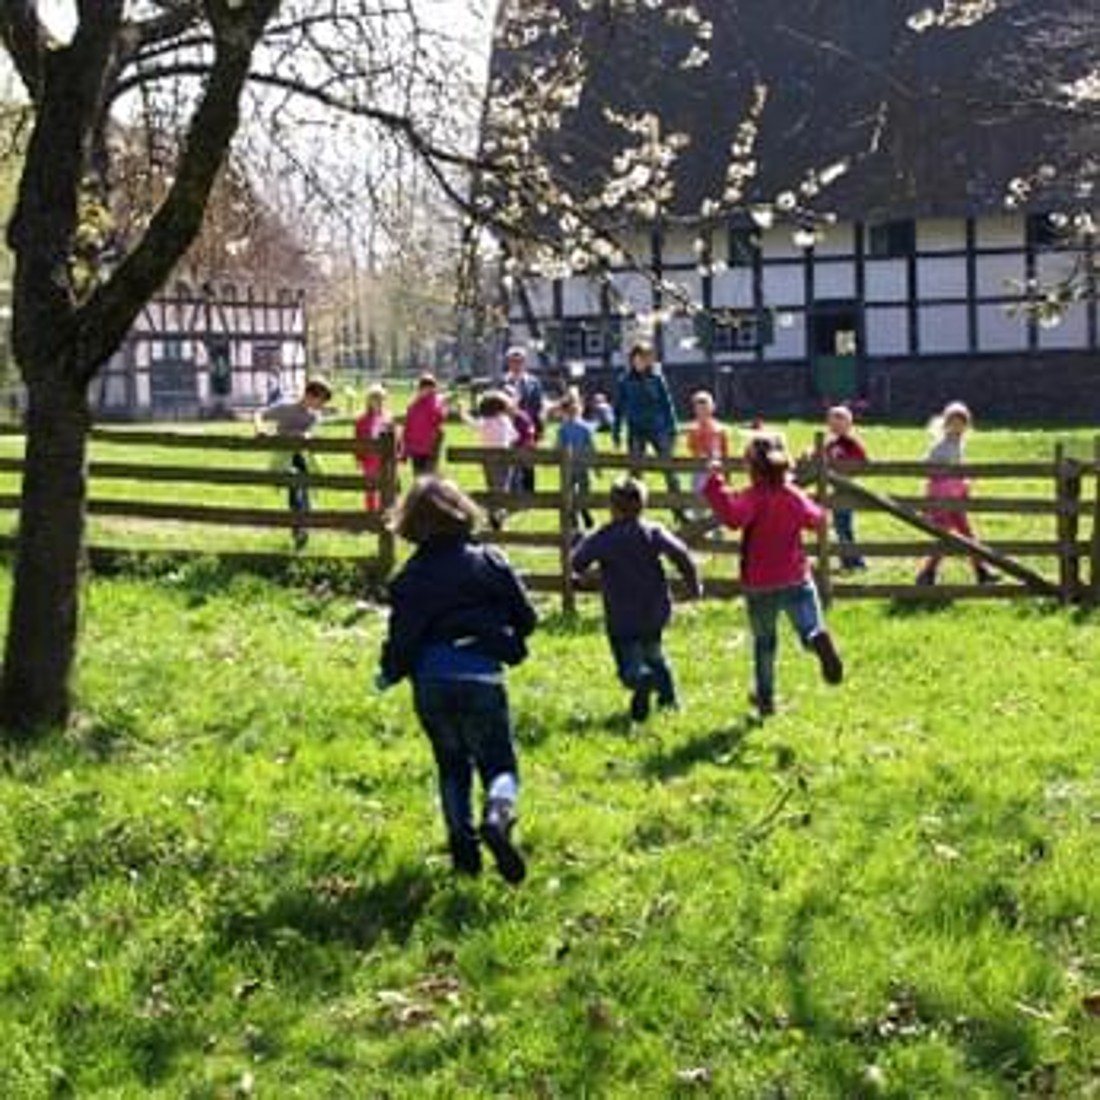 Kinder rennen über eine Wiese